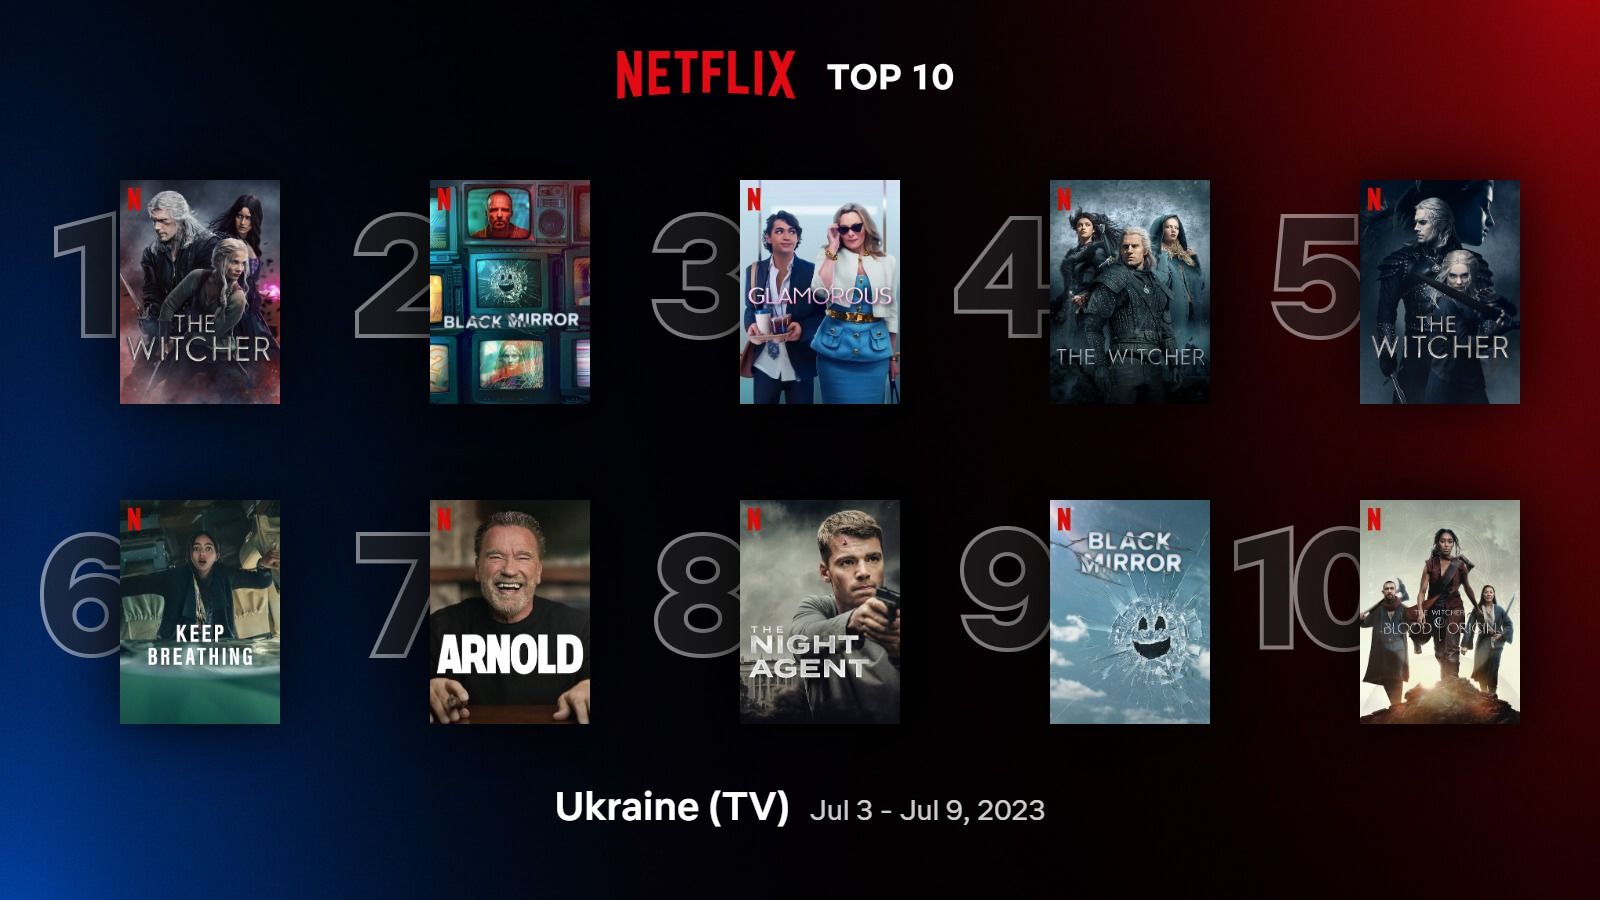 Самые популярные фильмы и сериалы Netflix, которые смотрят в Украине